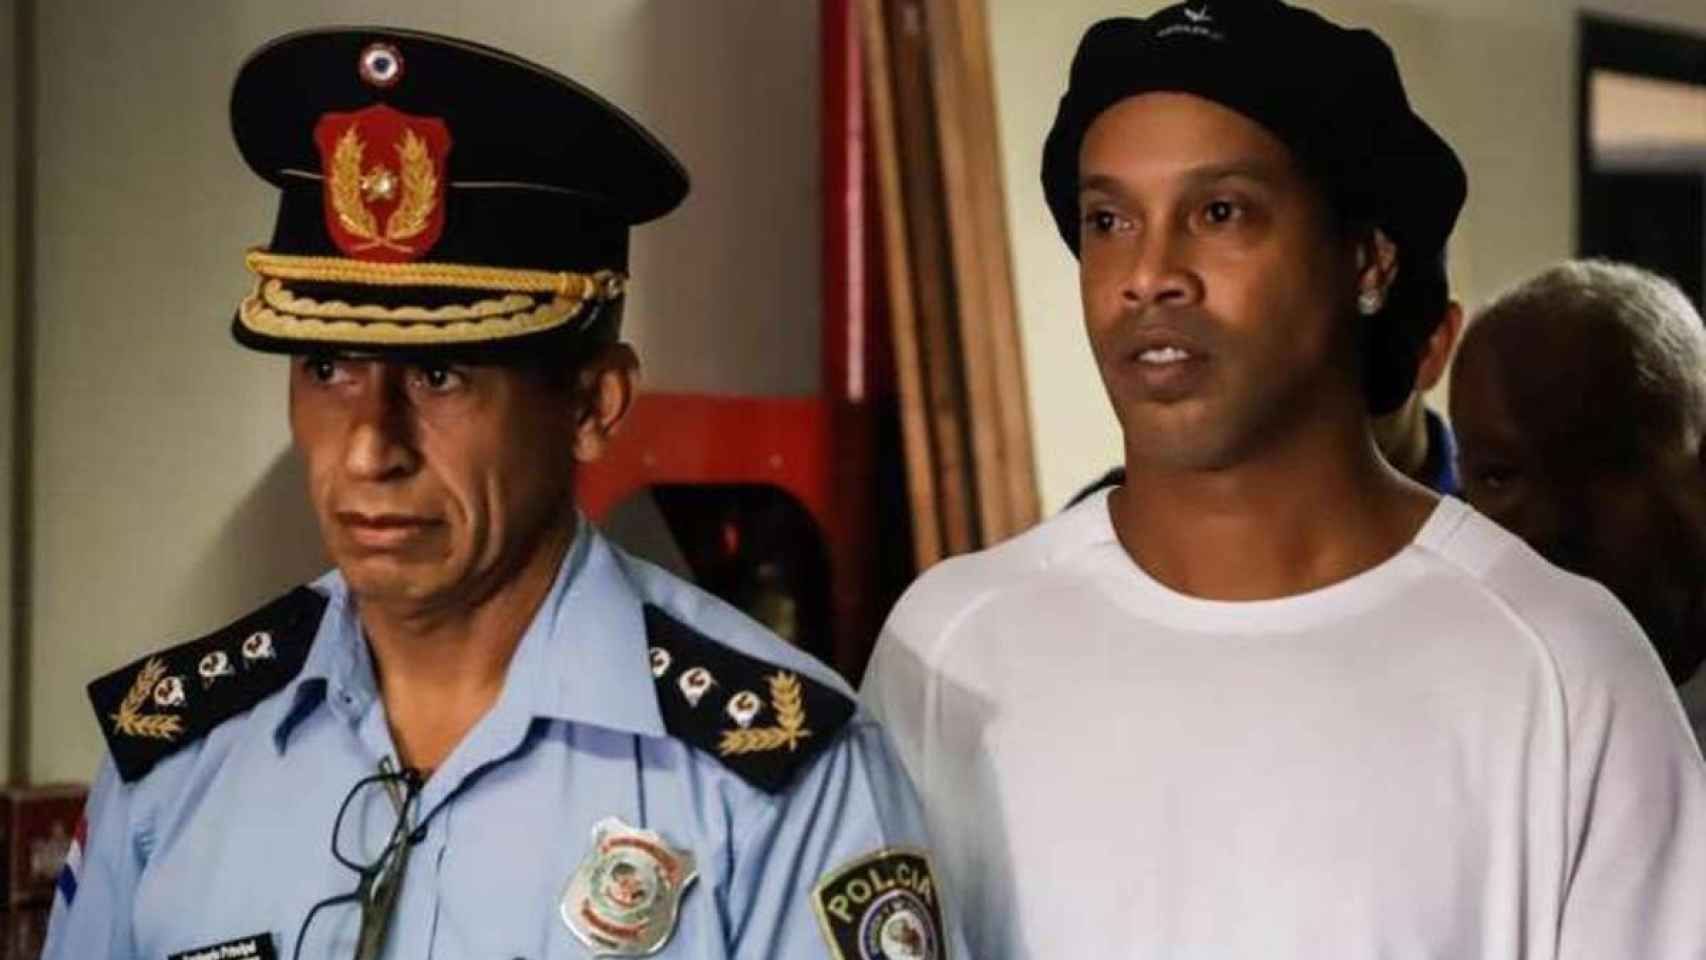 Ronaldinho en prisión